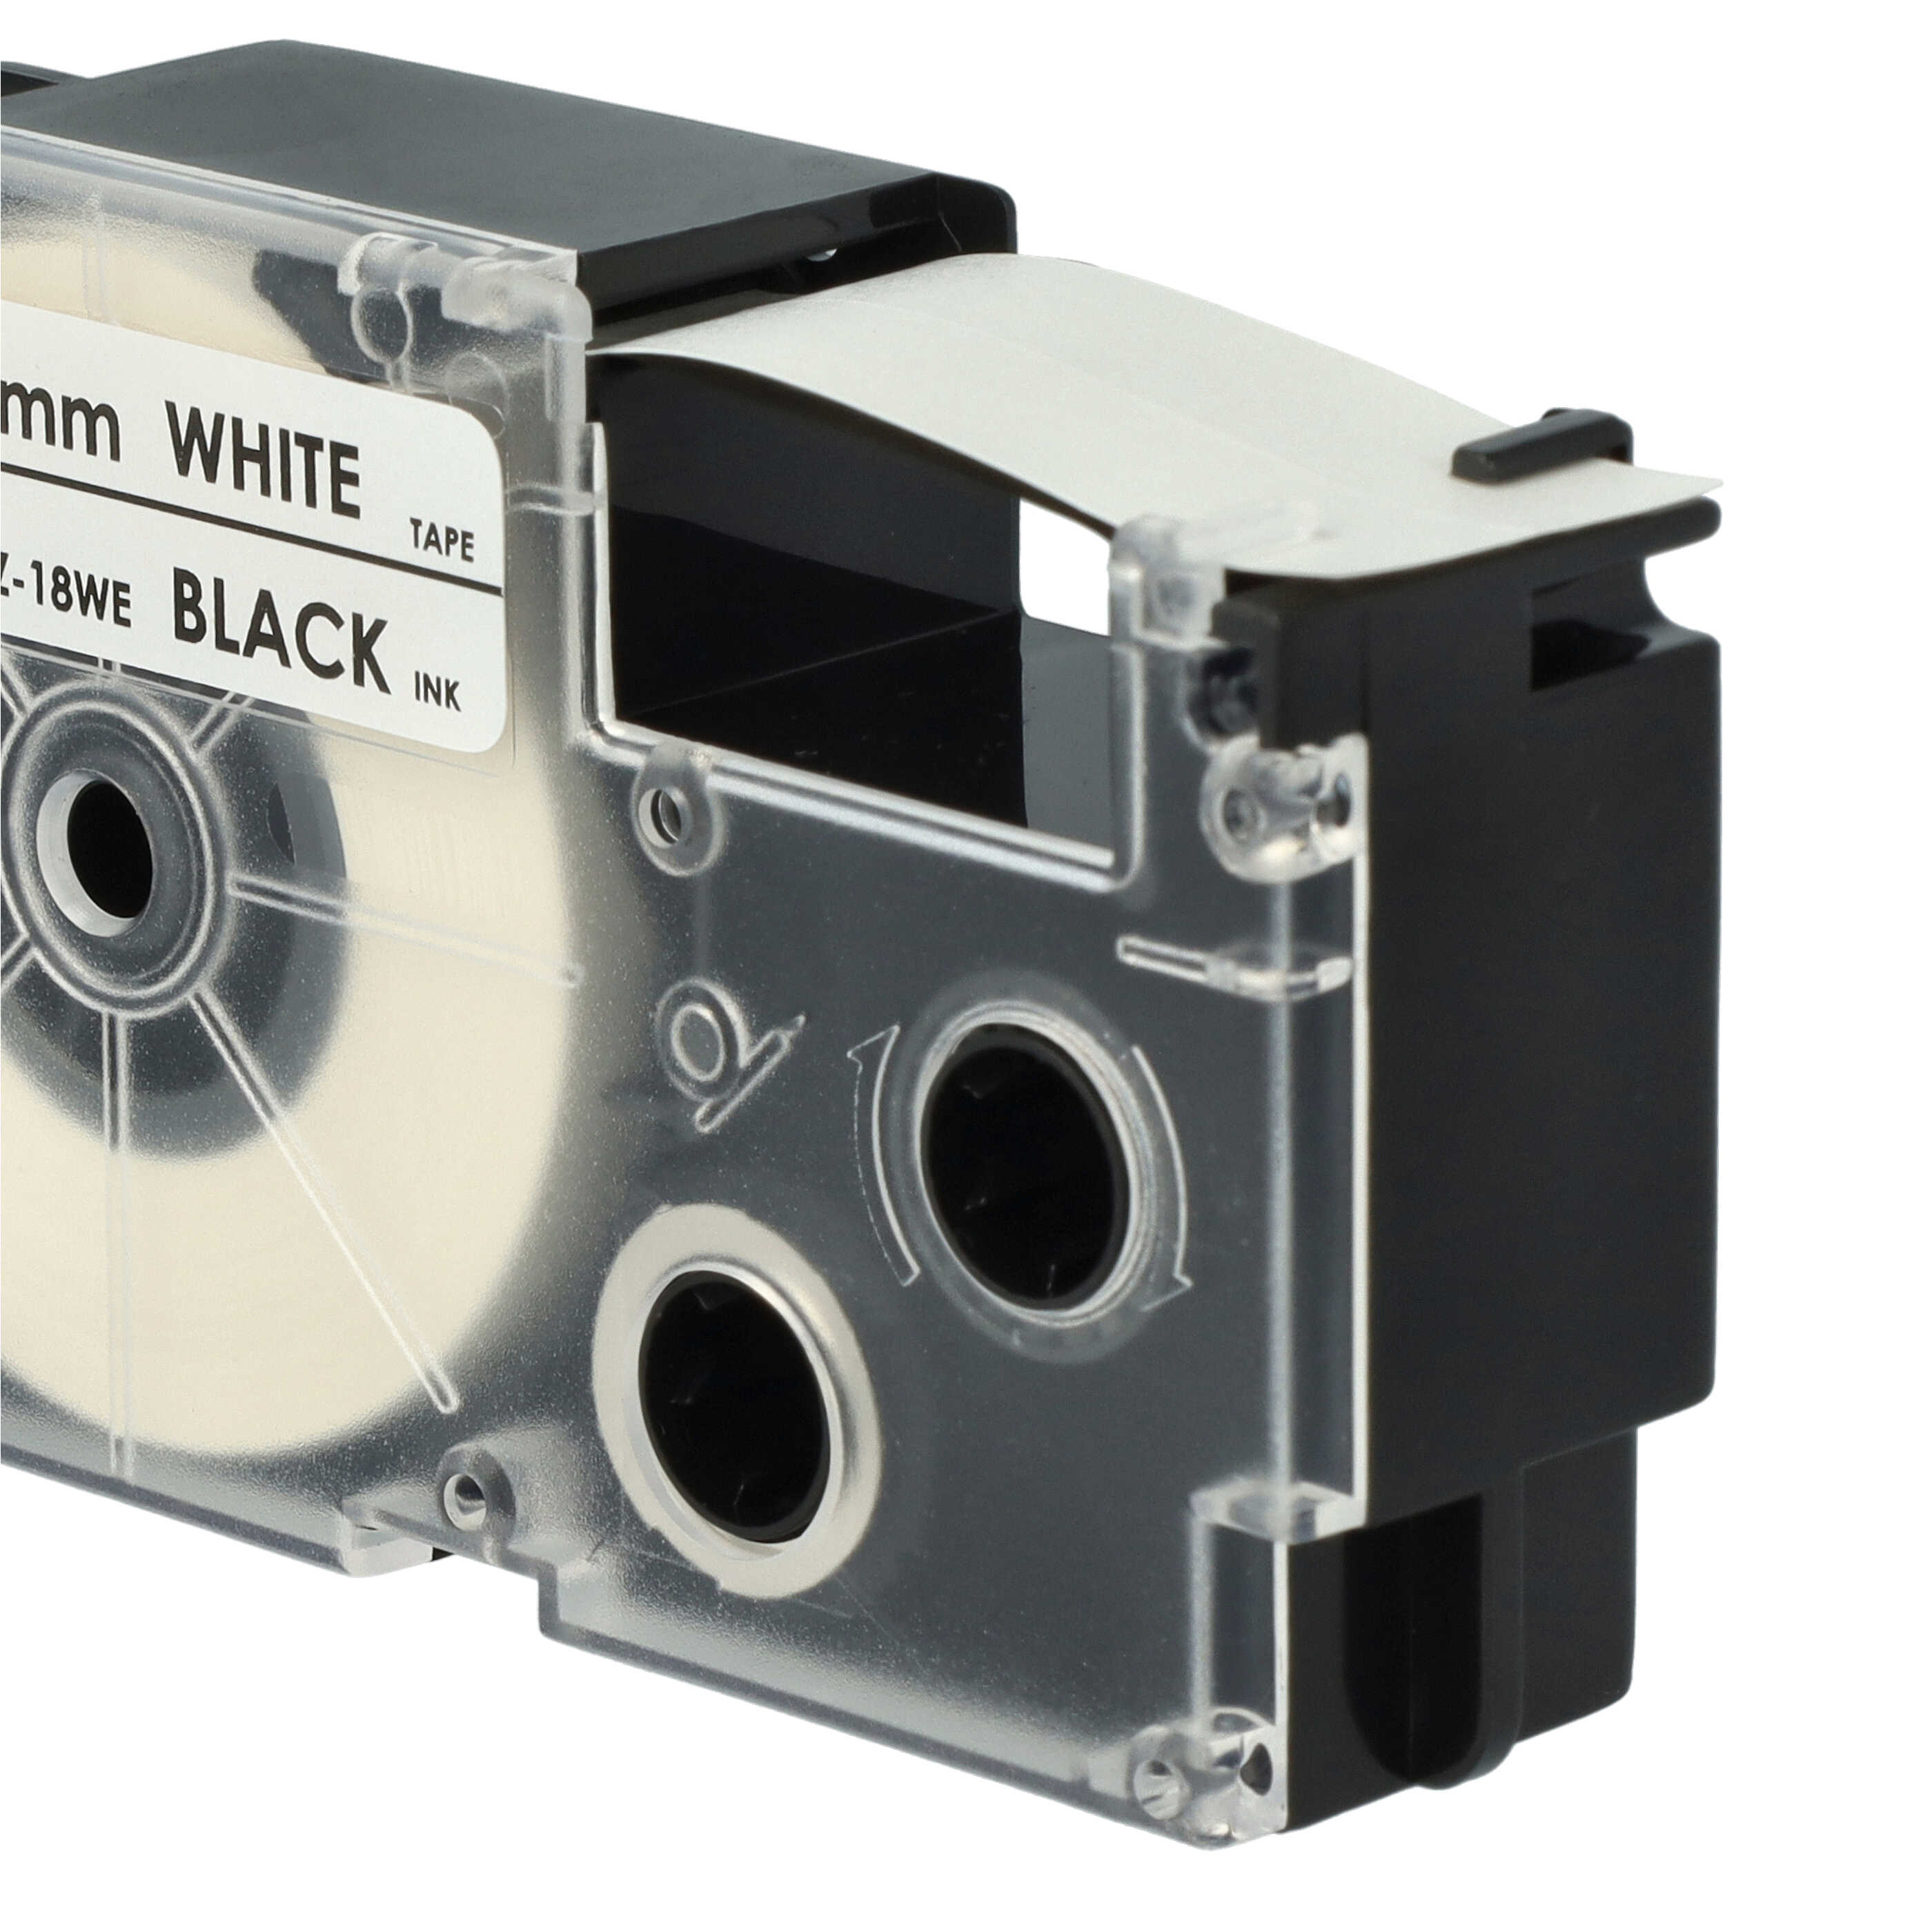 5x Schriftband als Ersatz für Casio XR-18WE1, XR-18WE - 18mm Schwarz auf Weiß